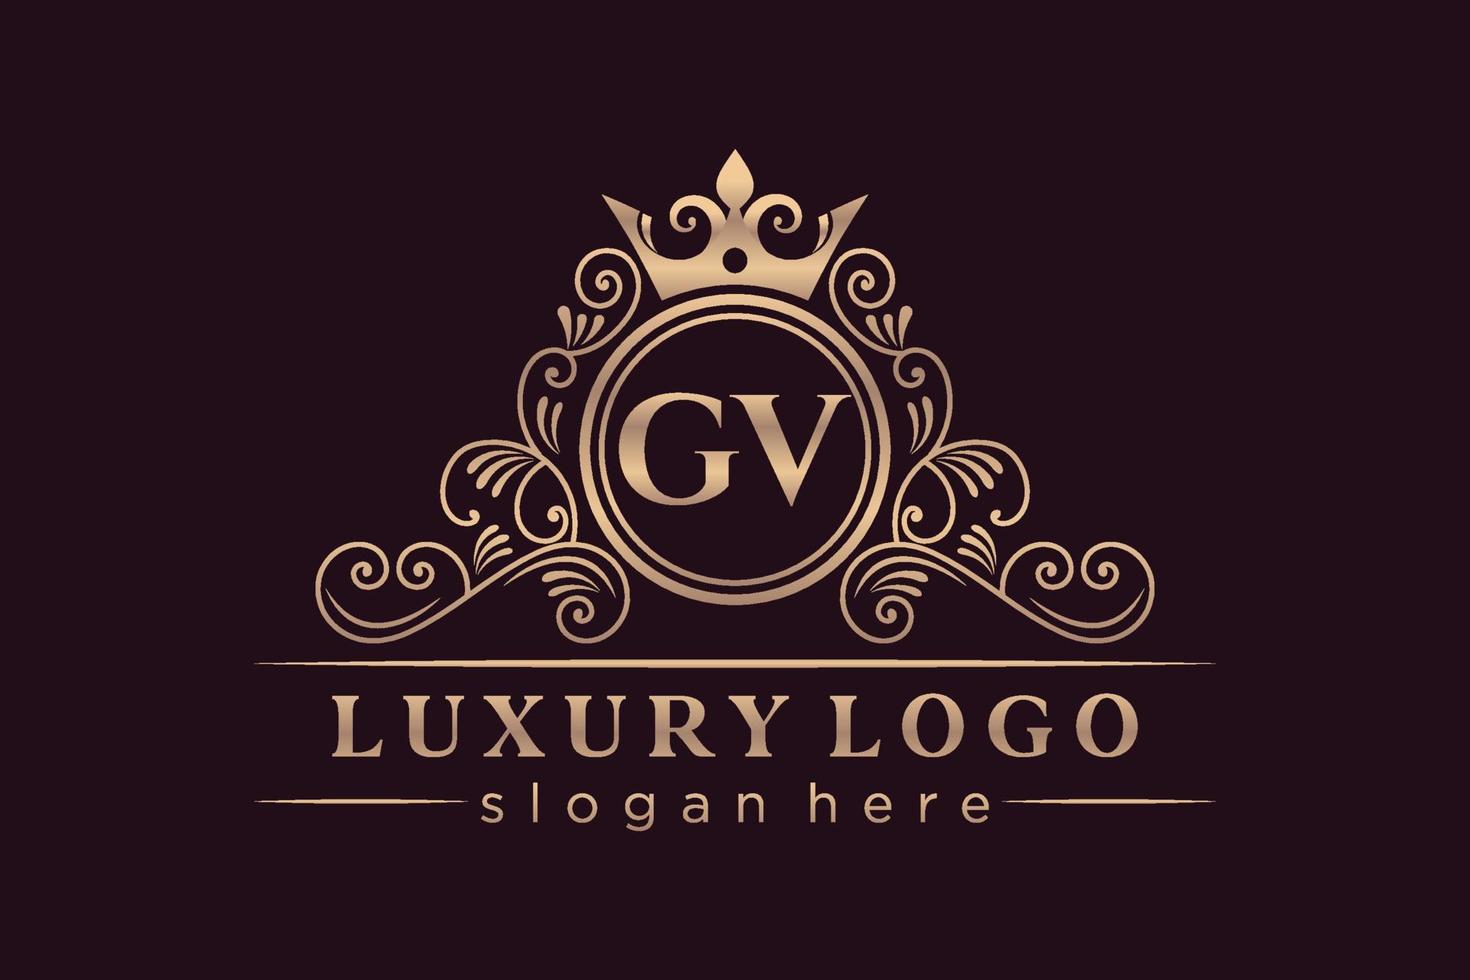 gv letra inicial oro caligráfico femenino floral dibujado a mano monograma heráldico antiguo estilo vintage diseño de logotipo de lujo vector premium